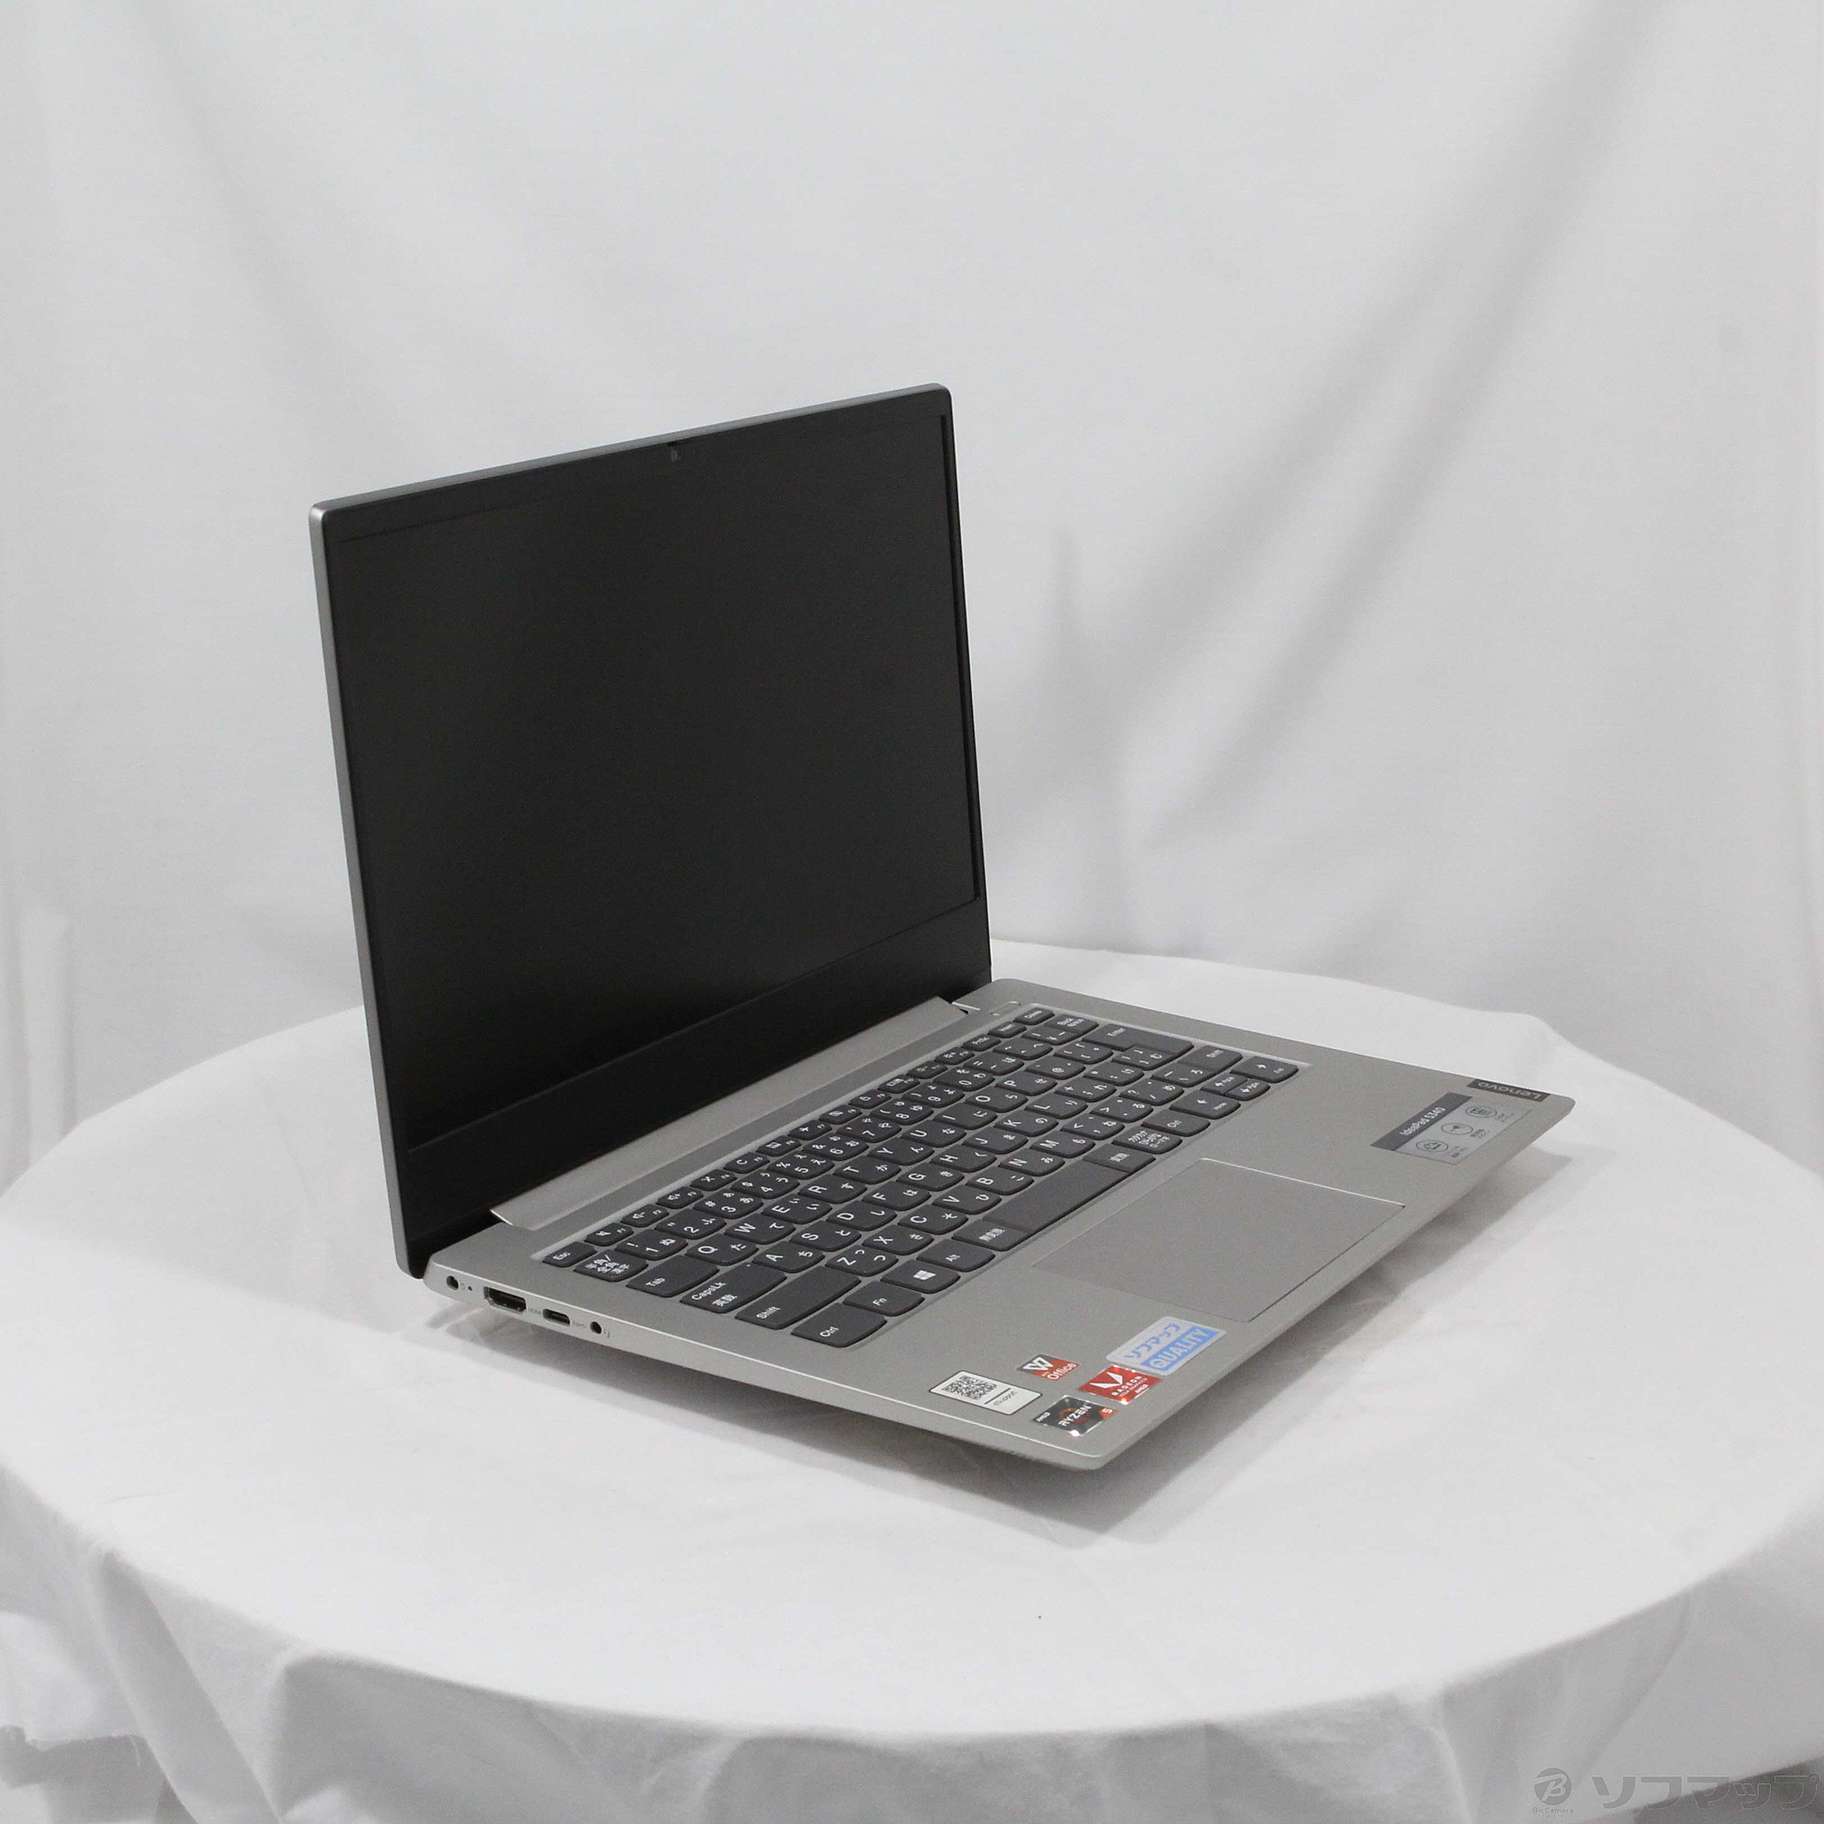 Lenovo ノートPC IdeaPad S340 プラチナグレー 購入証明書付